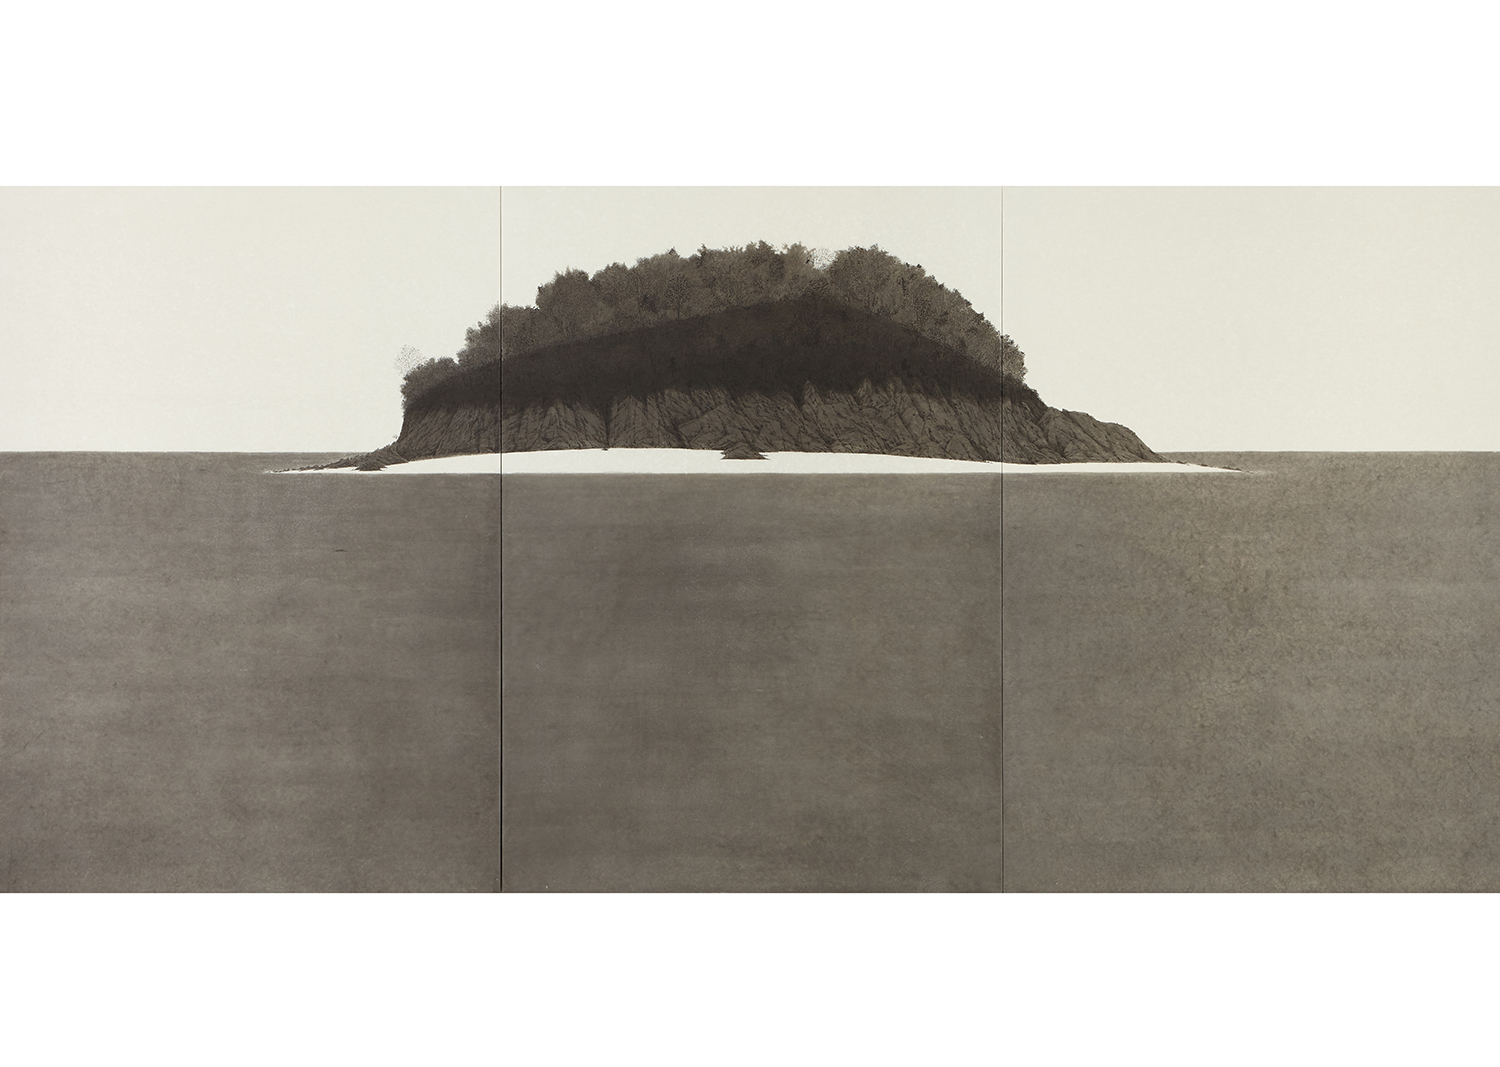 박한샘, 목섬_1,  한지 위에 수묵, 180.0x381.0 cm, 2015@hansame park, Mok Island_1, ink on korean paper, 180.0x381.0cm, 2015